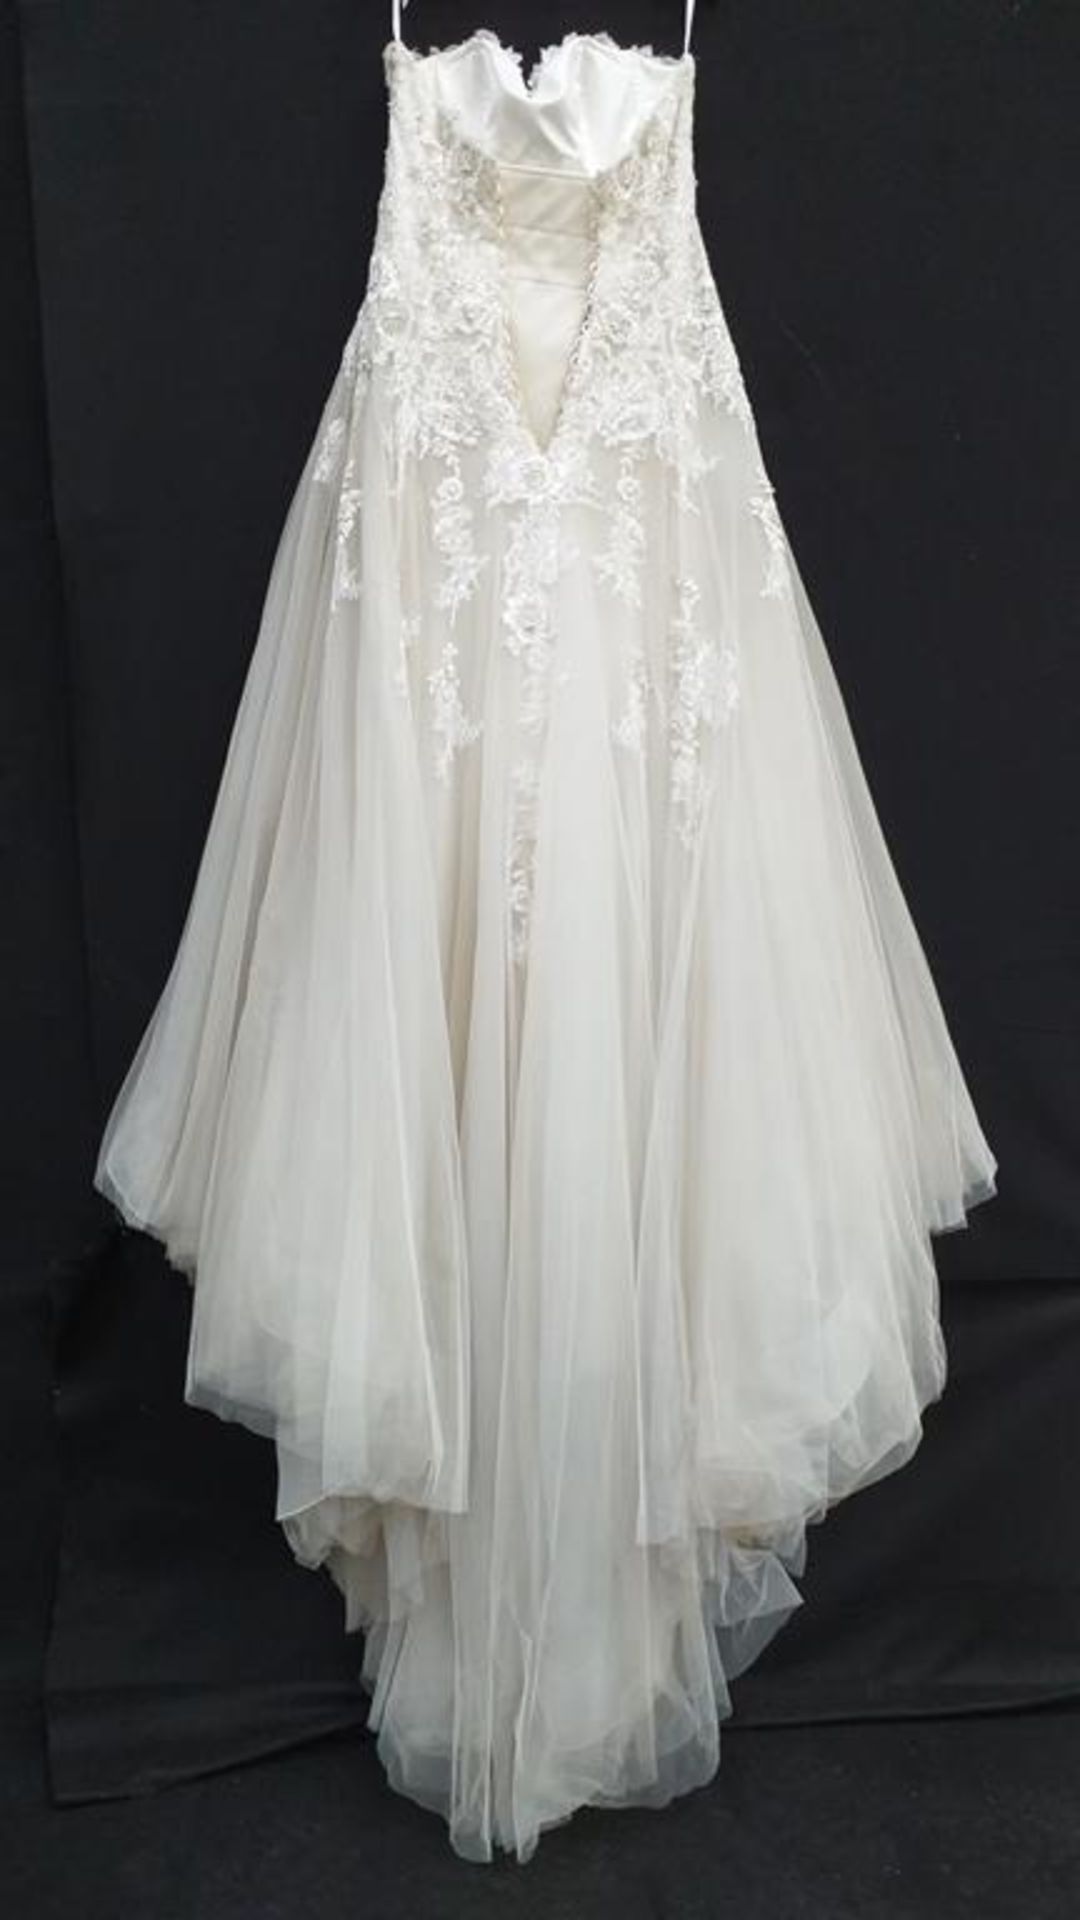 Le Papillion Toronto wedding dress - Image 4 of 9